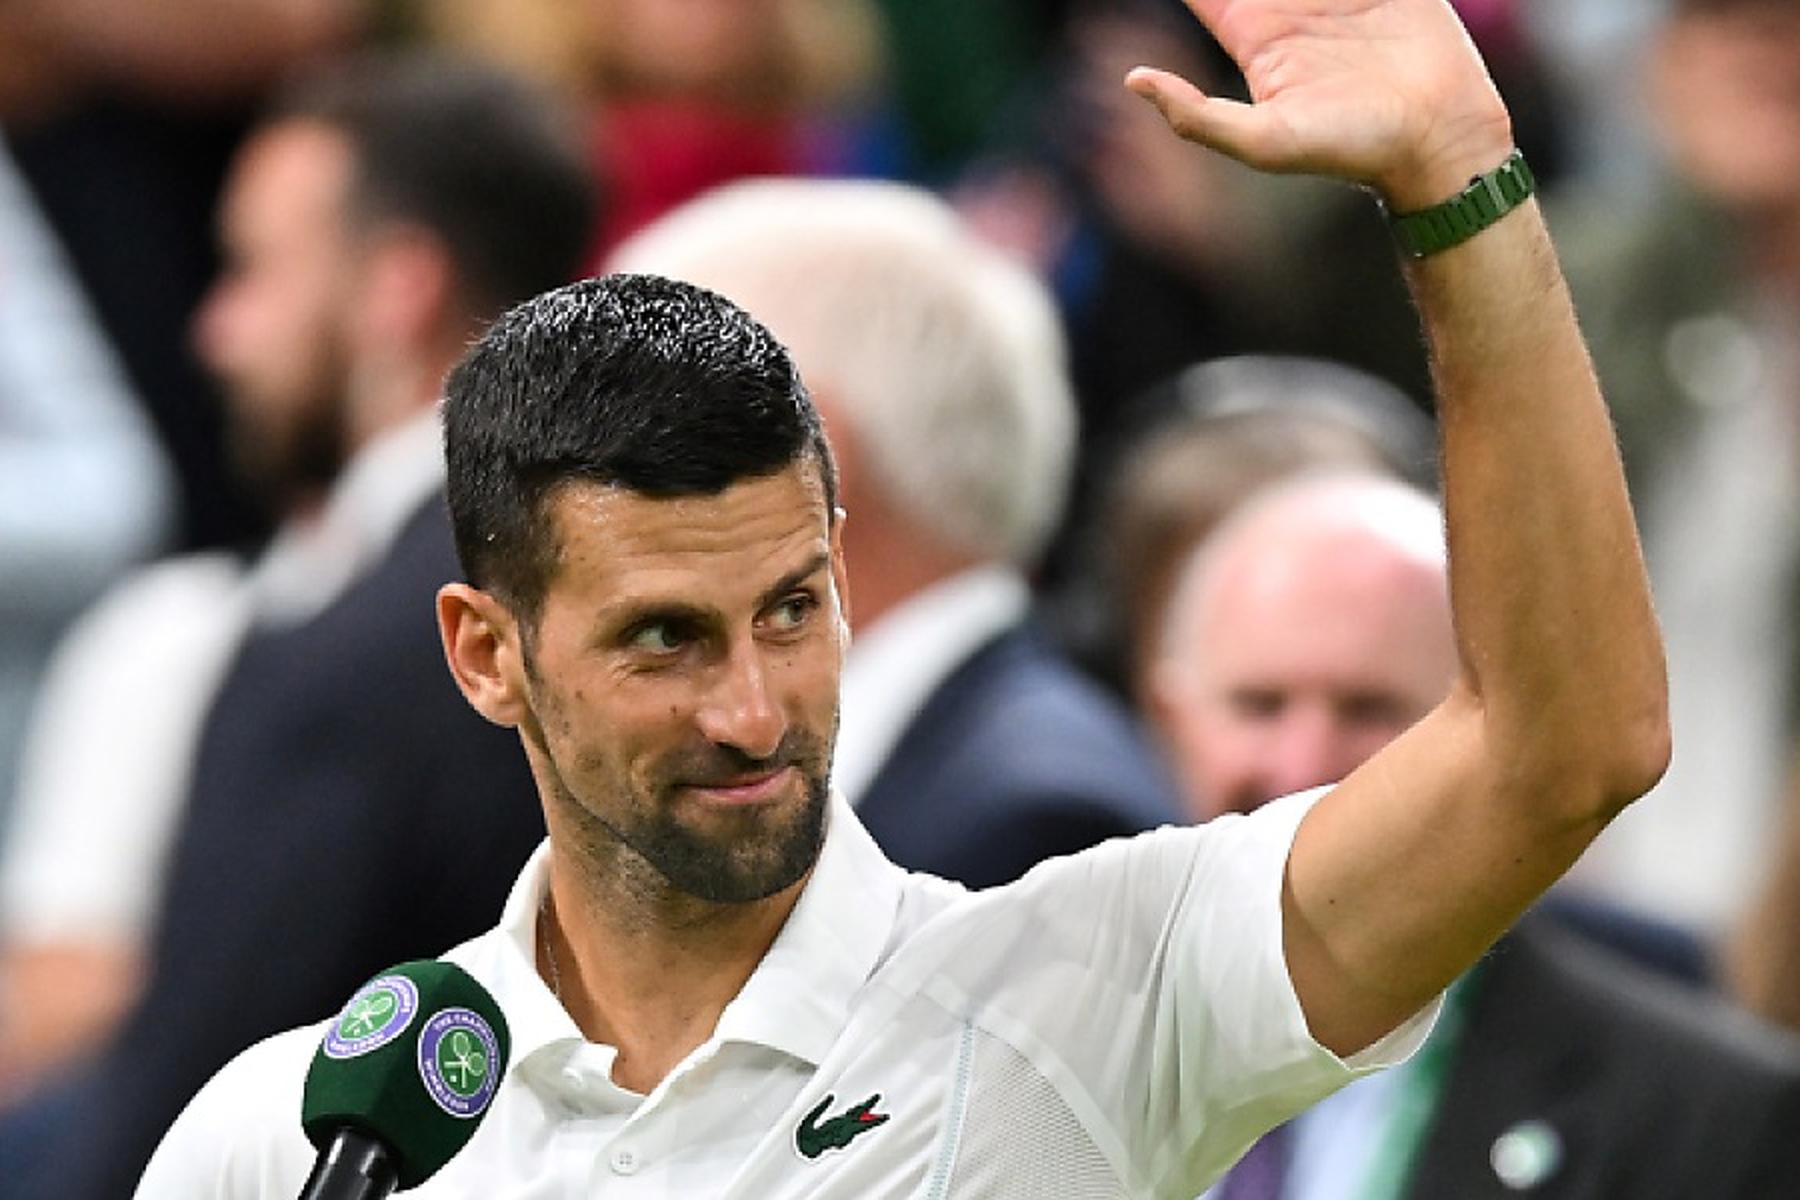 London: Djokovic nach gutem Auftritt mit scharfer Publikumskritik